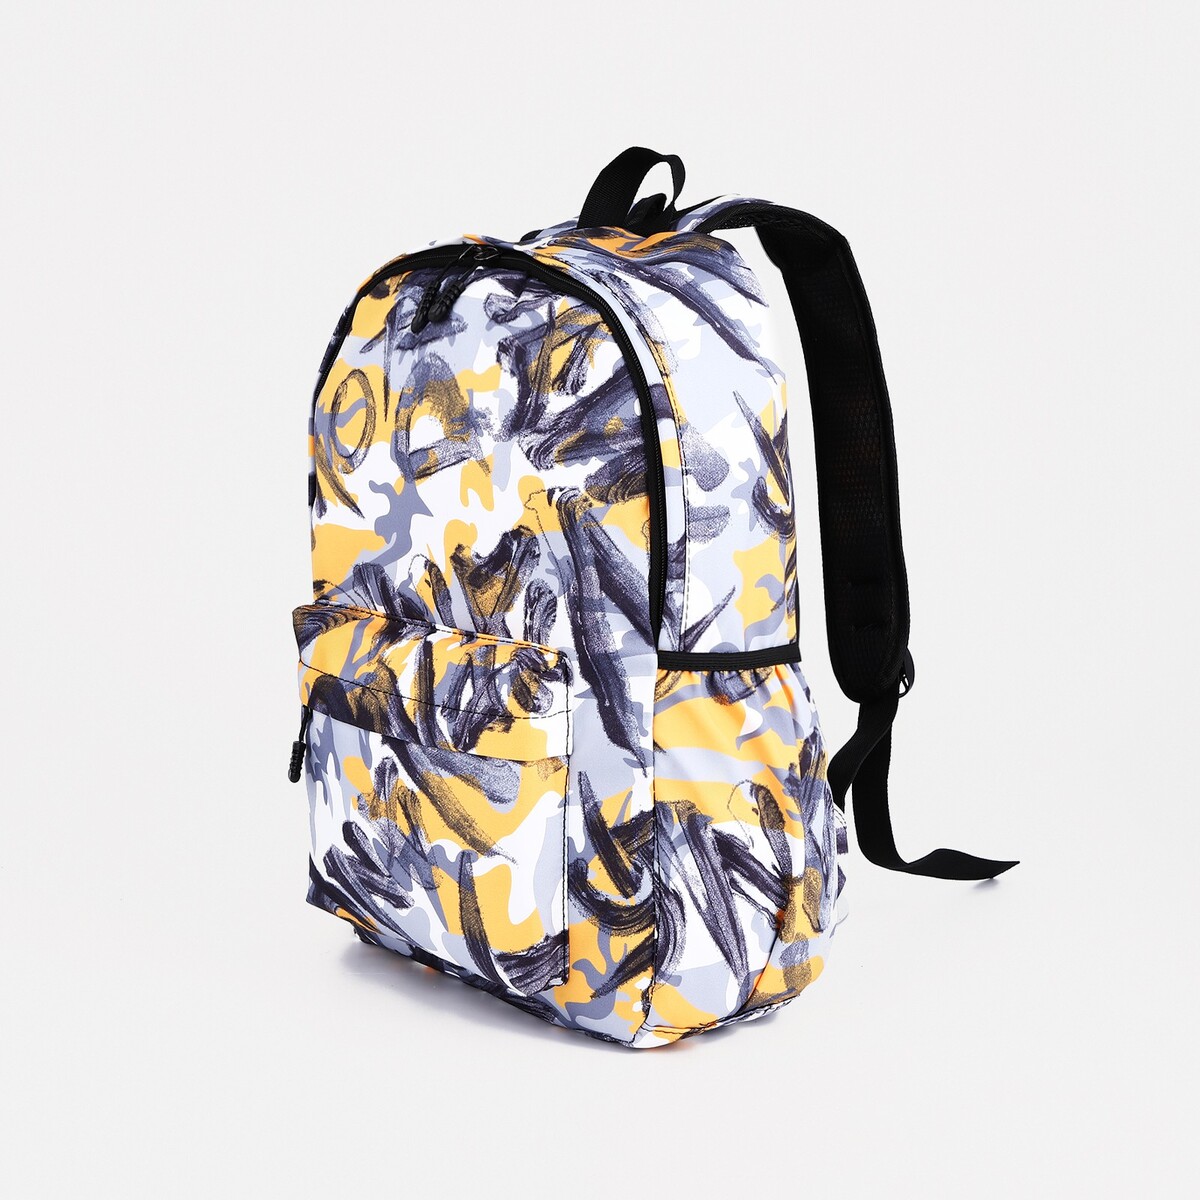 Рюкзак школьный из текстиля на молнии, 3 кармана, цвет желтый/серый рюкзак сумка из текстиля на молнии 3 кармана отдел для ноутбука серый